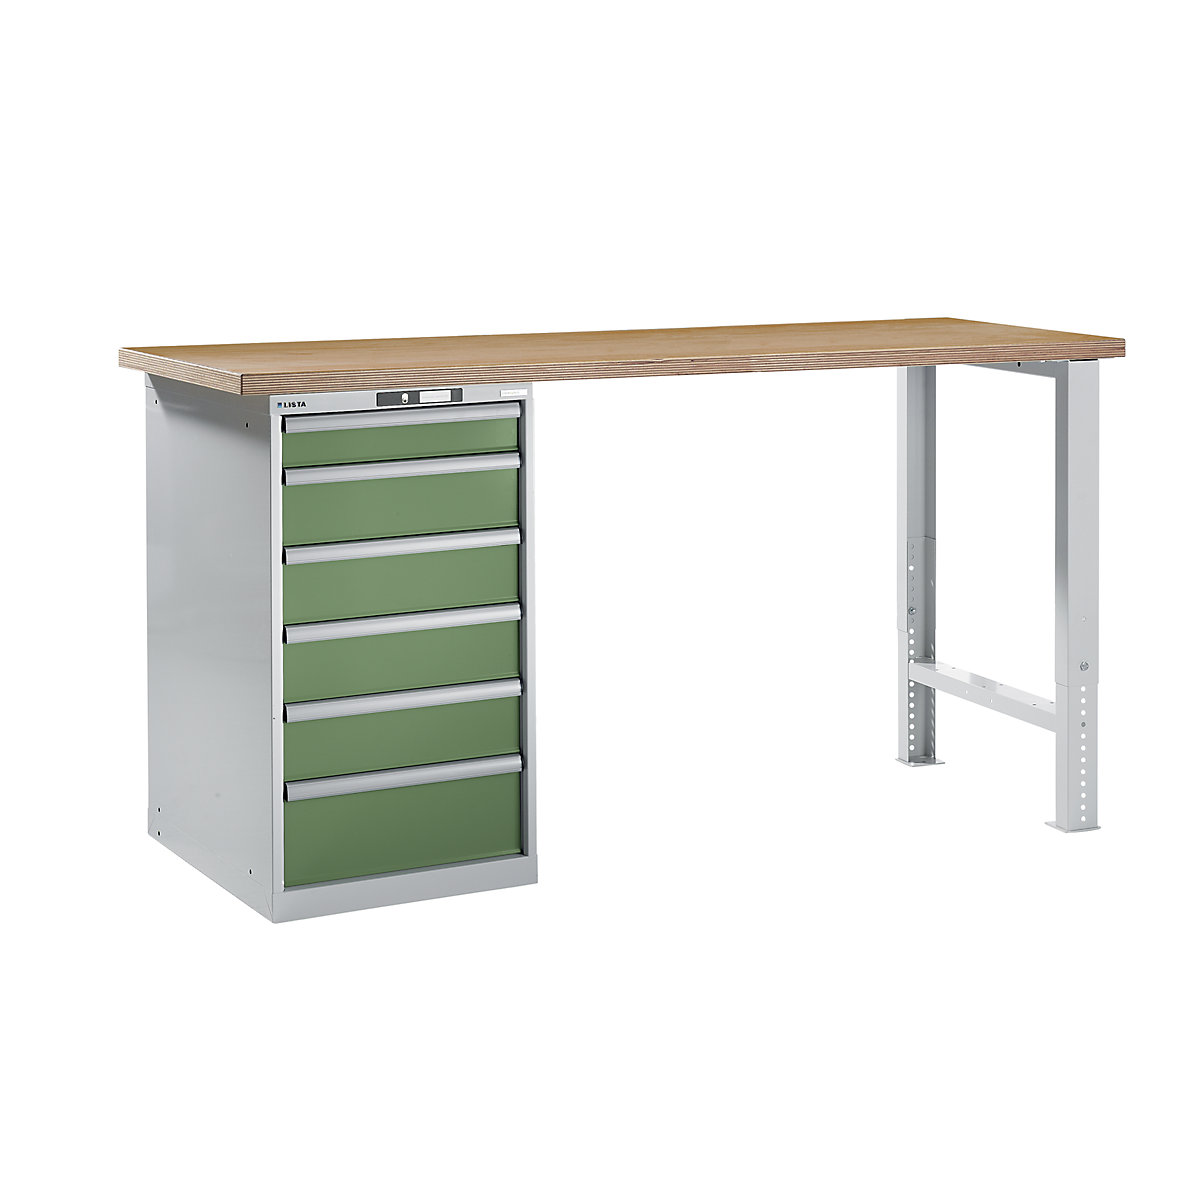 LISTA – Radna klupa kao modularni sustav, visina 1040 mm, ormar za postavljanje ispod stola, 6 ladice, u rezeda zelenoj boji, širina stola 2000 mm